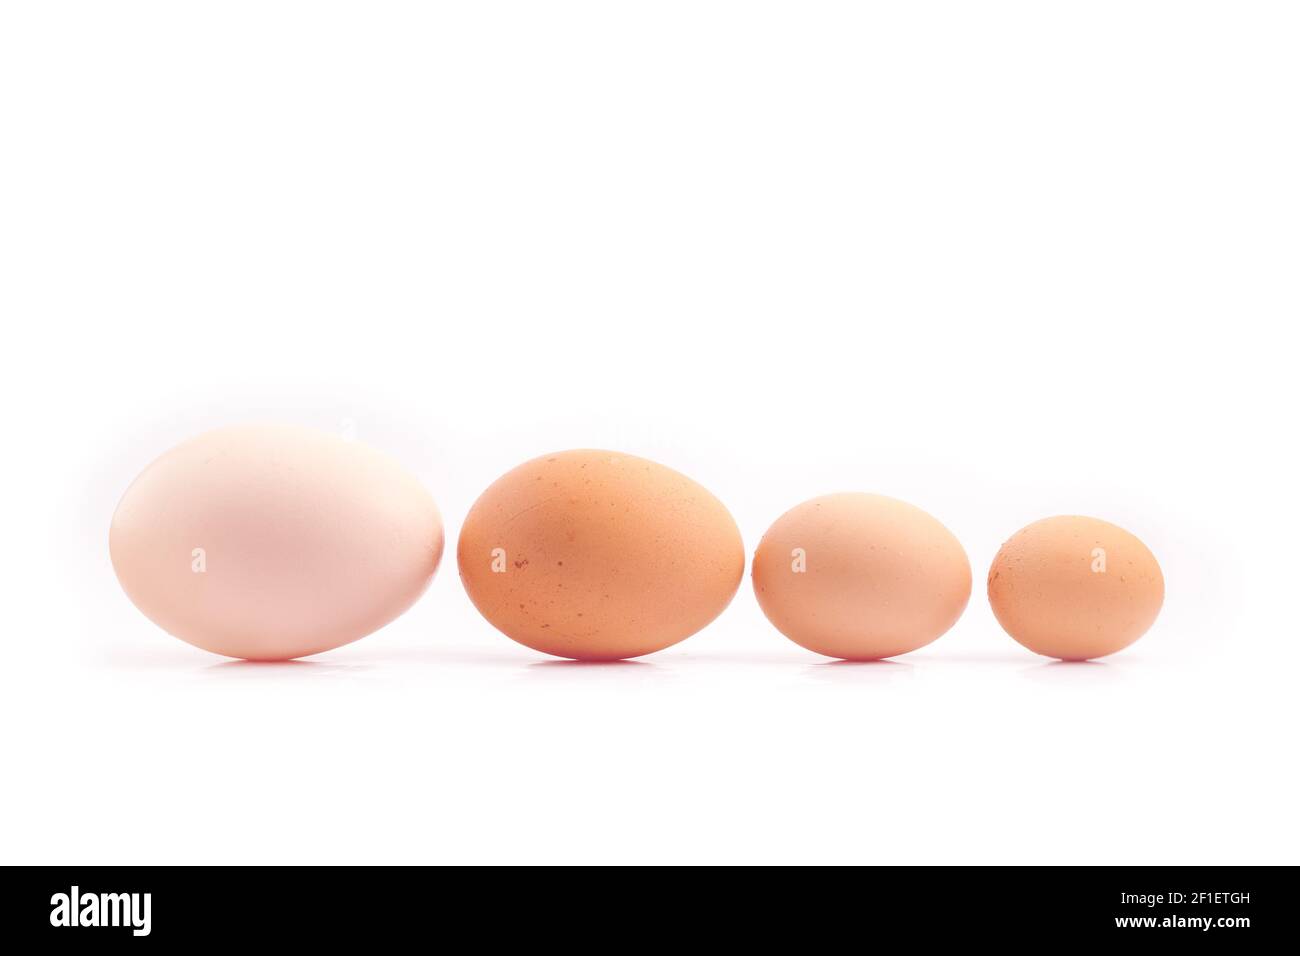 huevos - cuatro huevos de pollo de diferentes tamaños alineados, clasificados por tamaño, aislados sobre fondo blanco Foto de stock